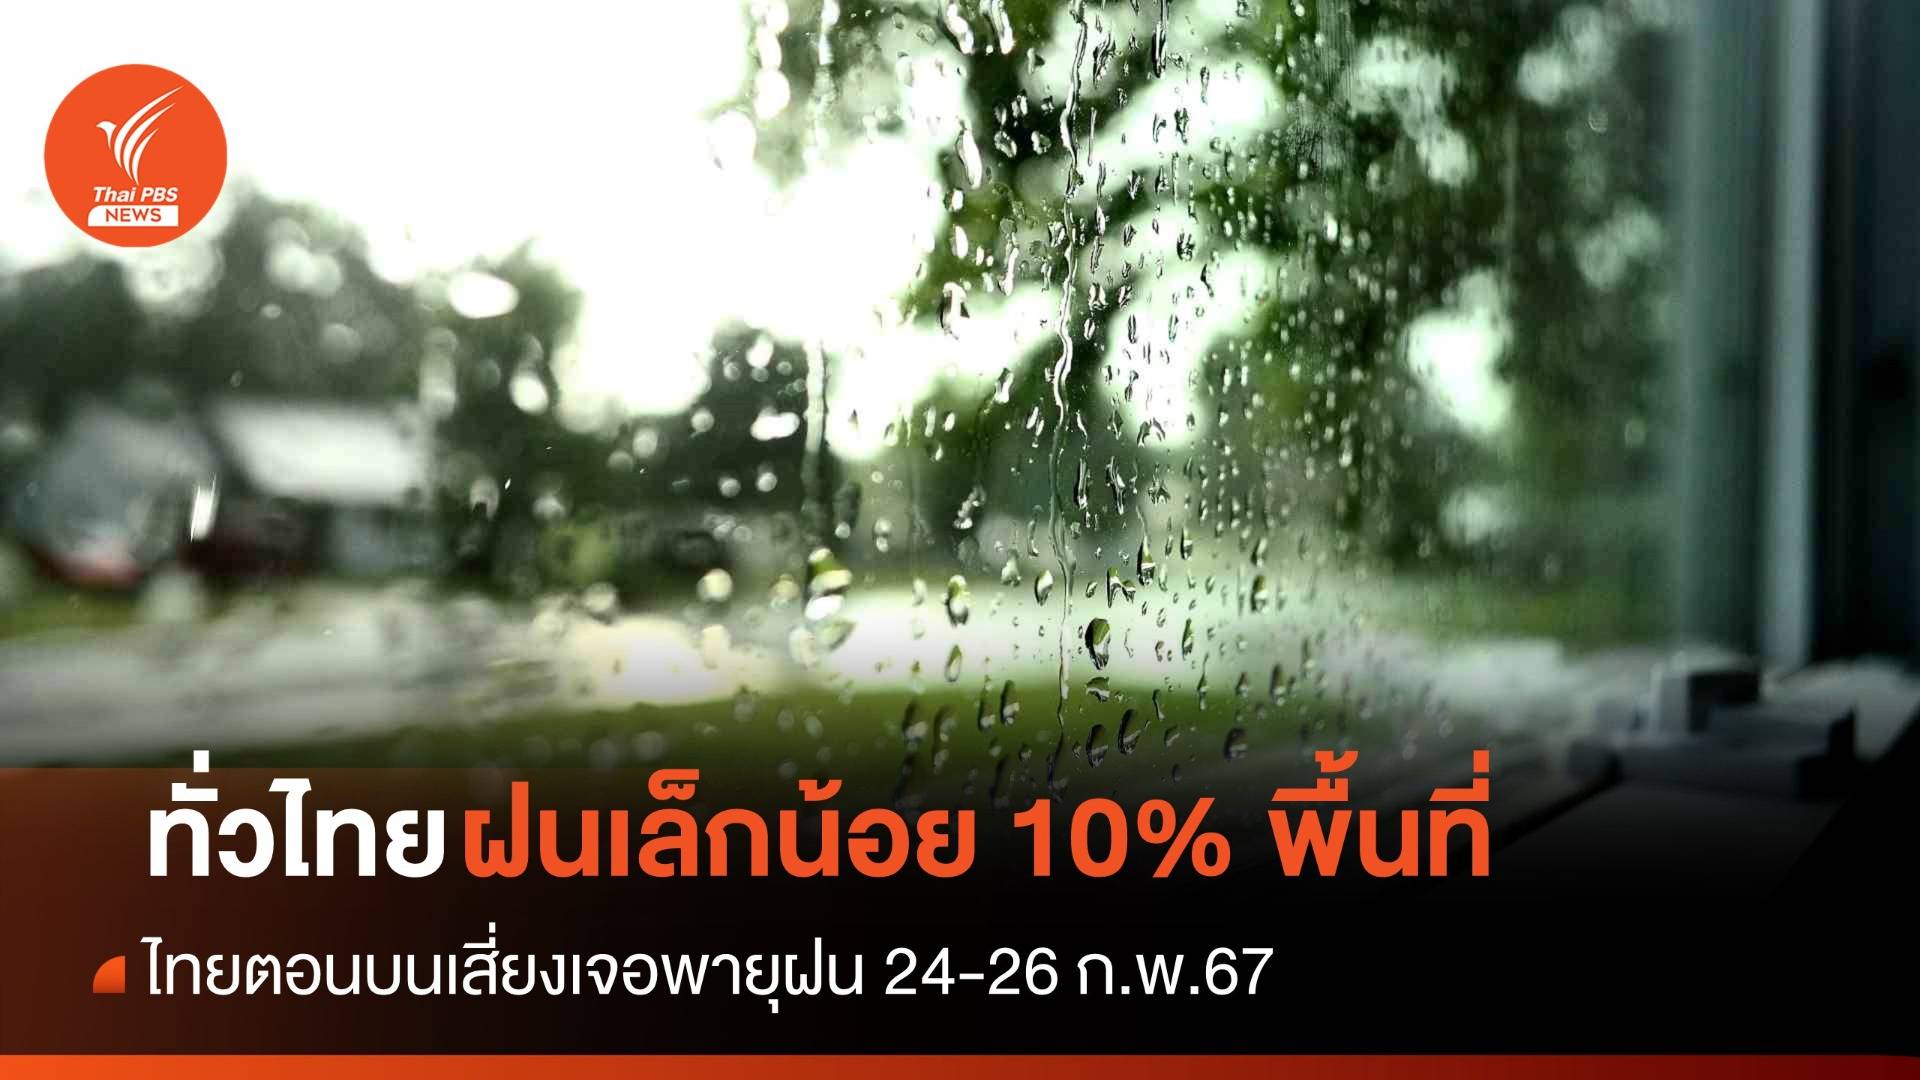 สภาพอากาศวันนี้ ทั่วไทยมีฝนเล็กน้อยร้อยละ 10 ของพื้นที่